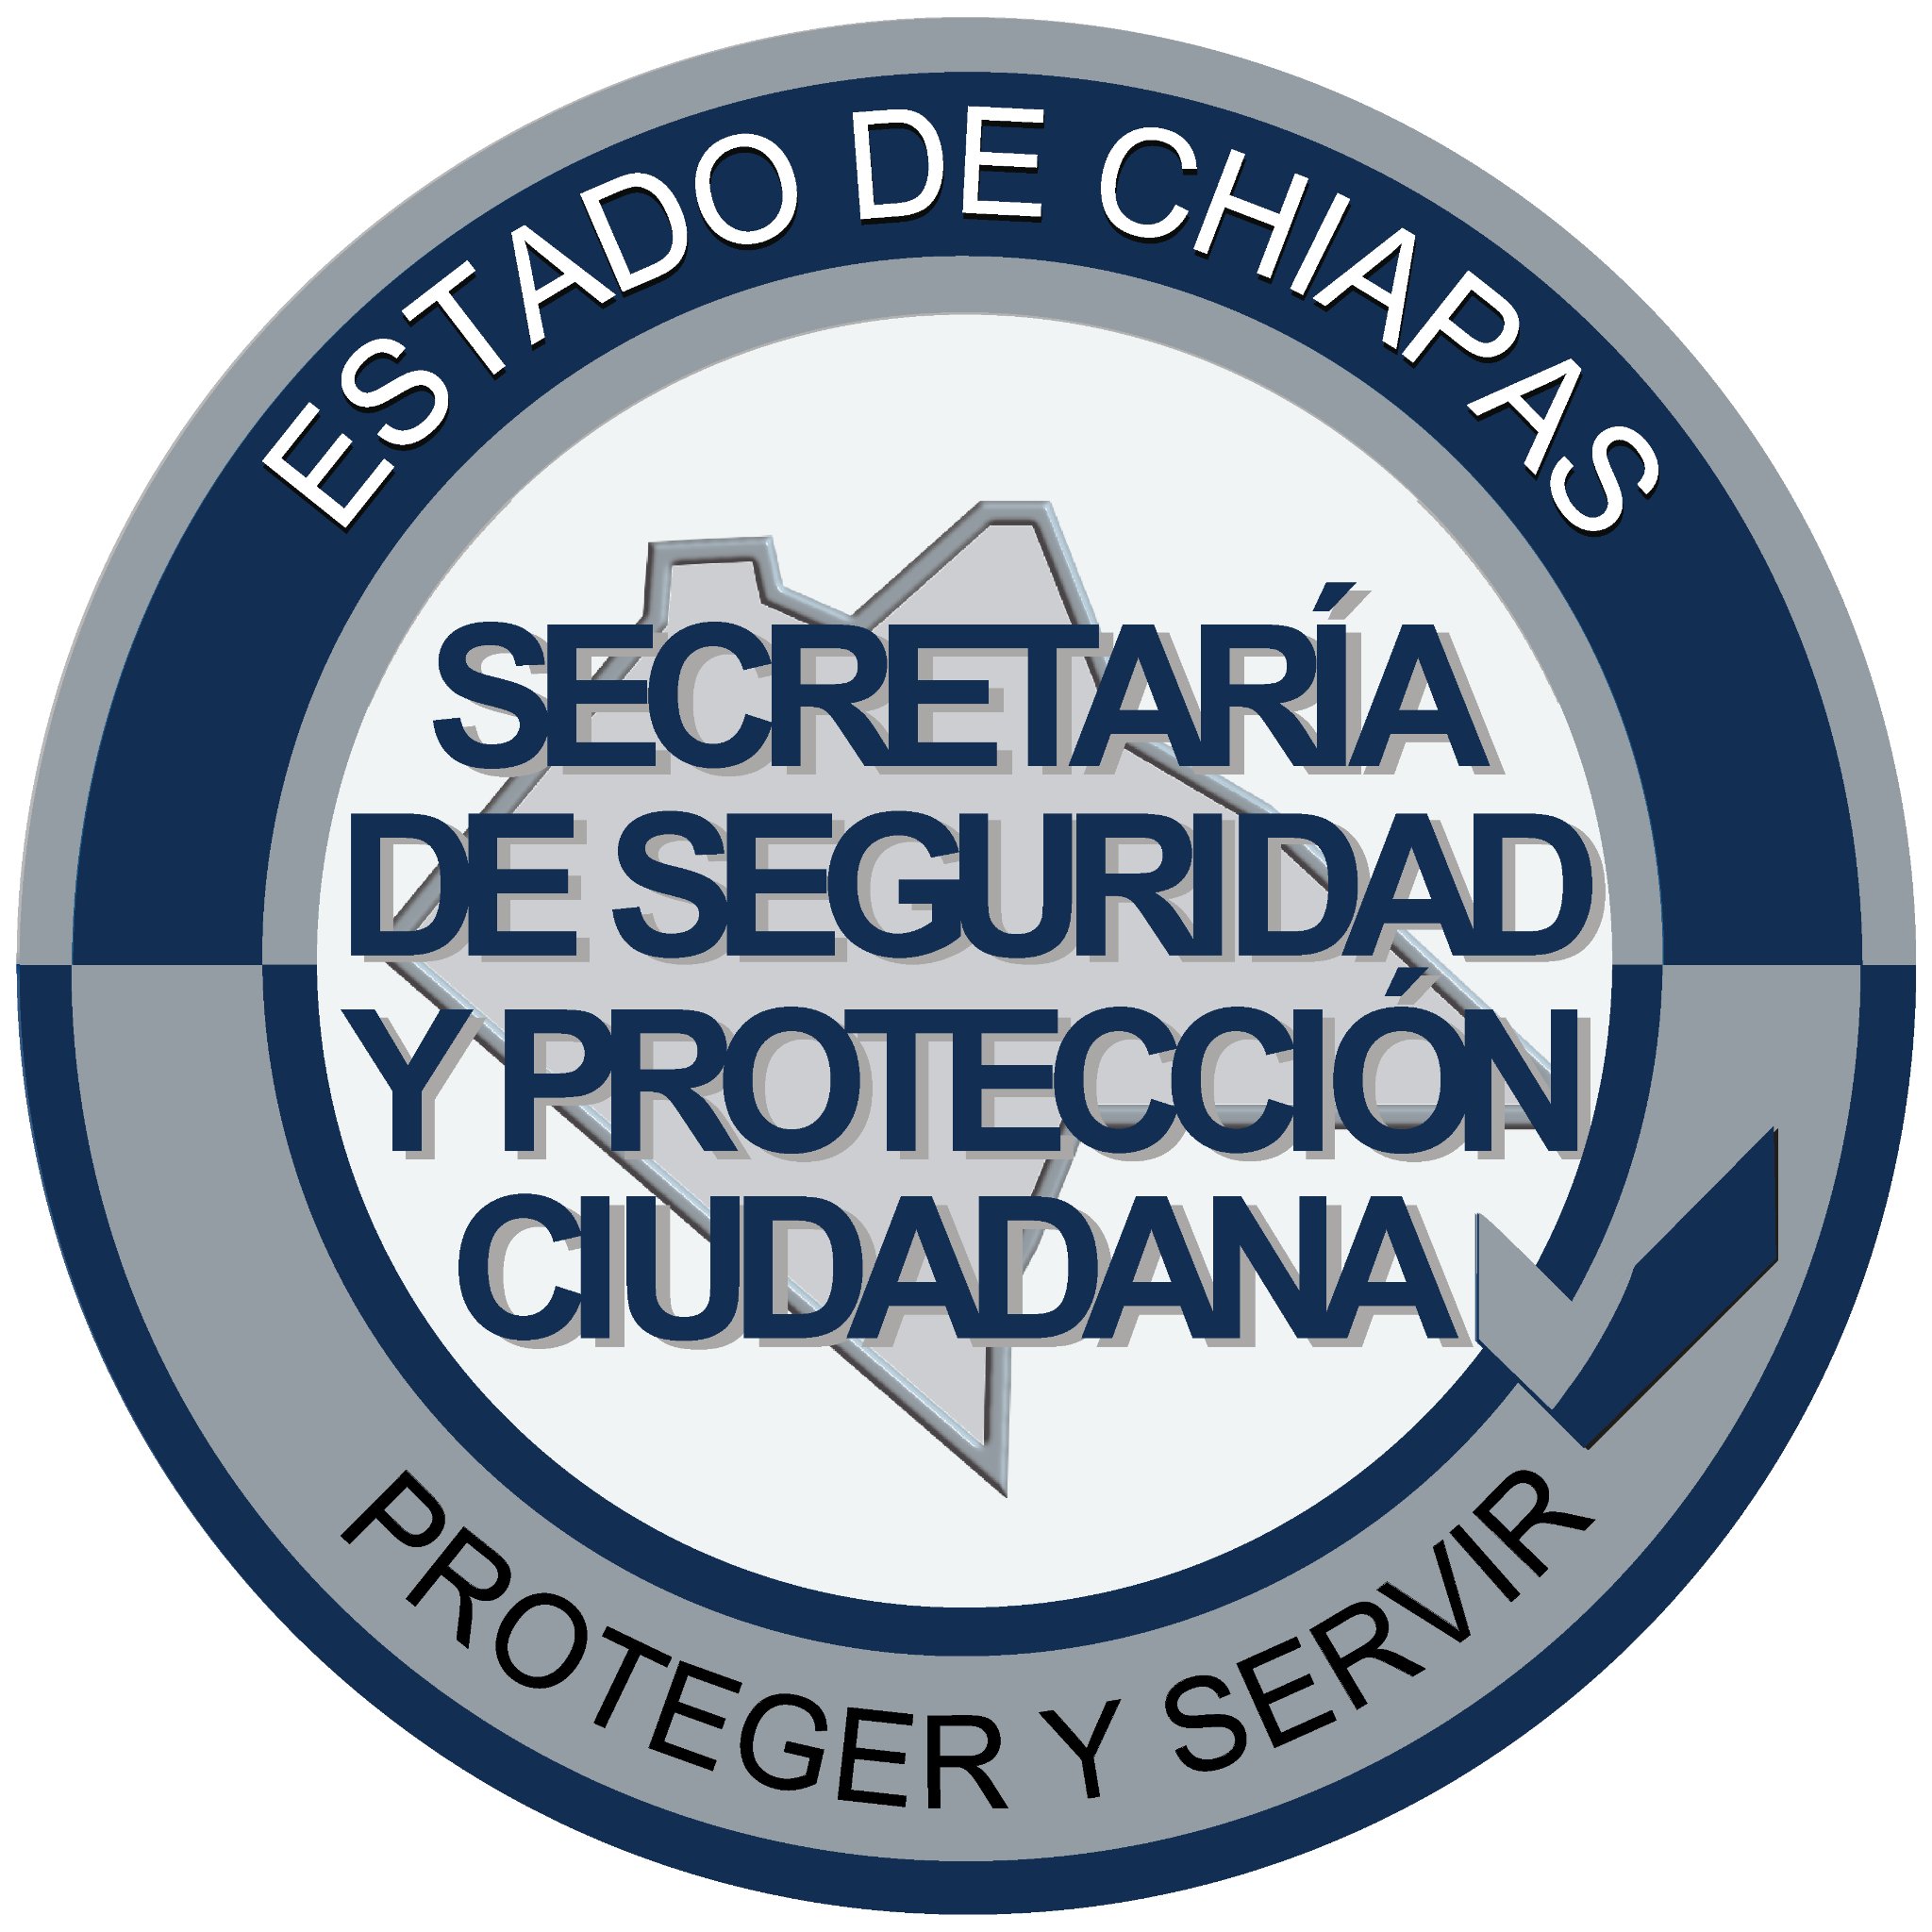 Policía Cibernética de la Secretaria de Seguridad y Protección Ciudadana #Chiapas #ciberseguridad #cybersecurity 800 221 1484